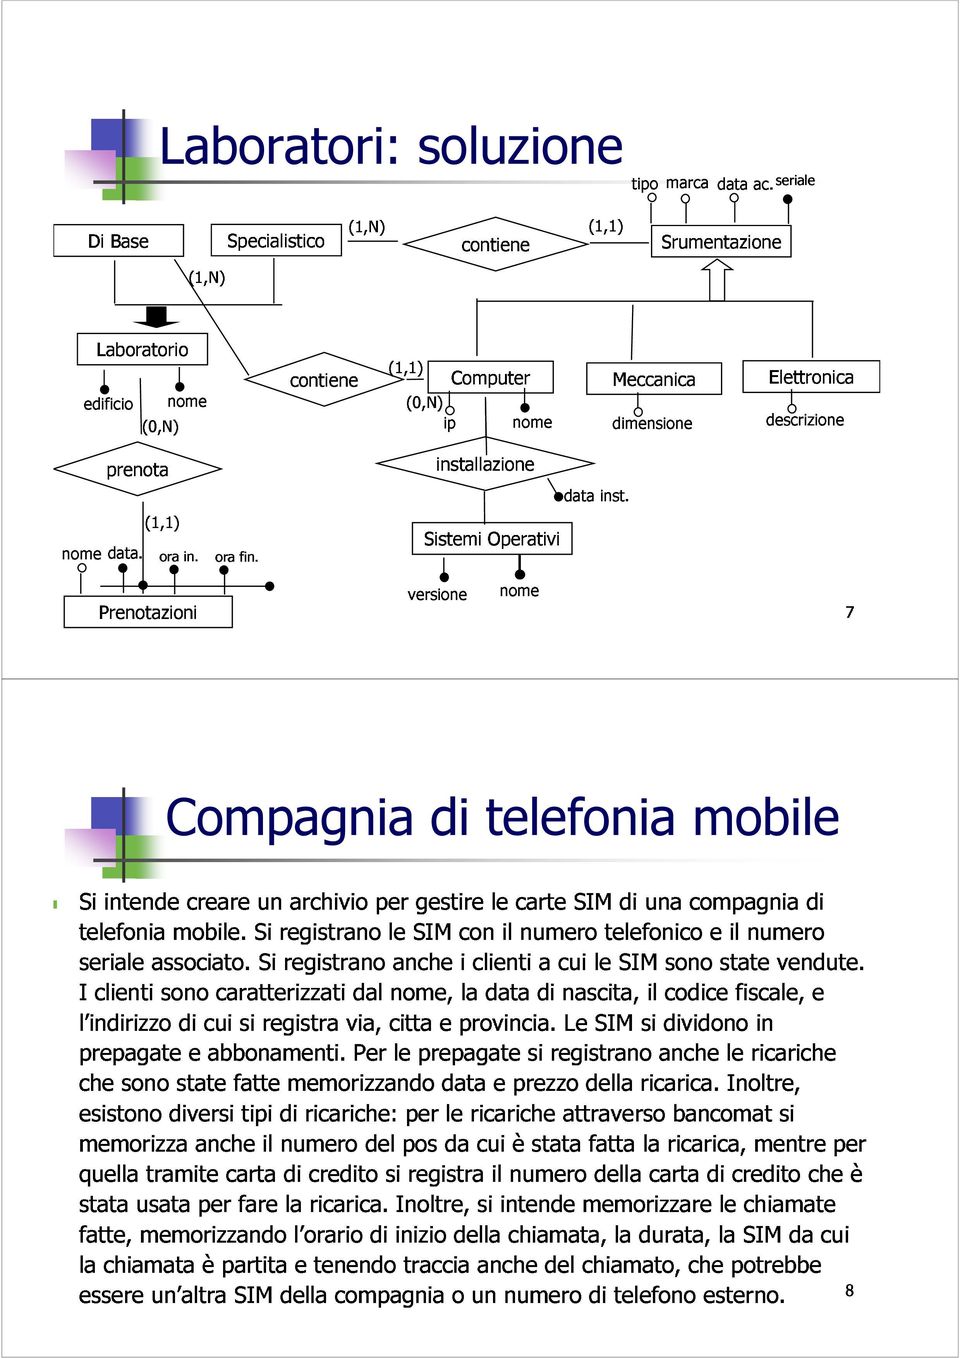 orafin. (1,1) 7 Si telefonia seriale I intende associato. mobile.